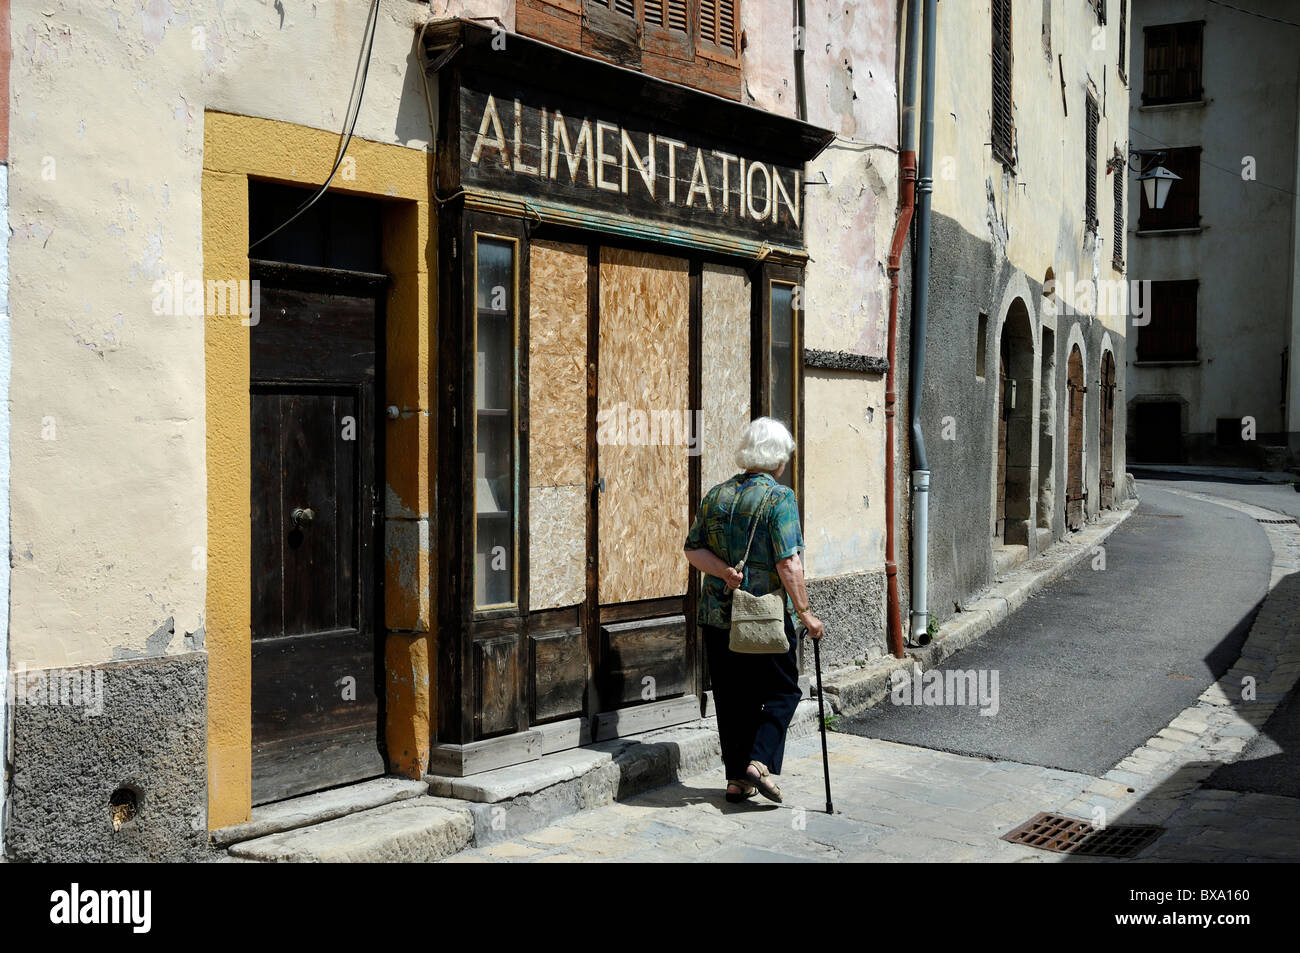 Une vieille femme avec un bâton de marche passe devant une boutique de village à bord et fermée ou un magasin général, alimentation, Beauvezer, Alpes-de-haute-Provence, France Banque D'Images